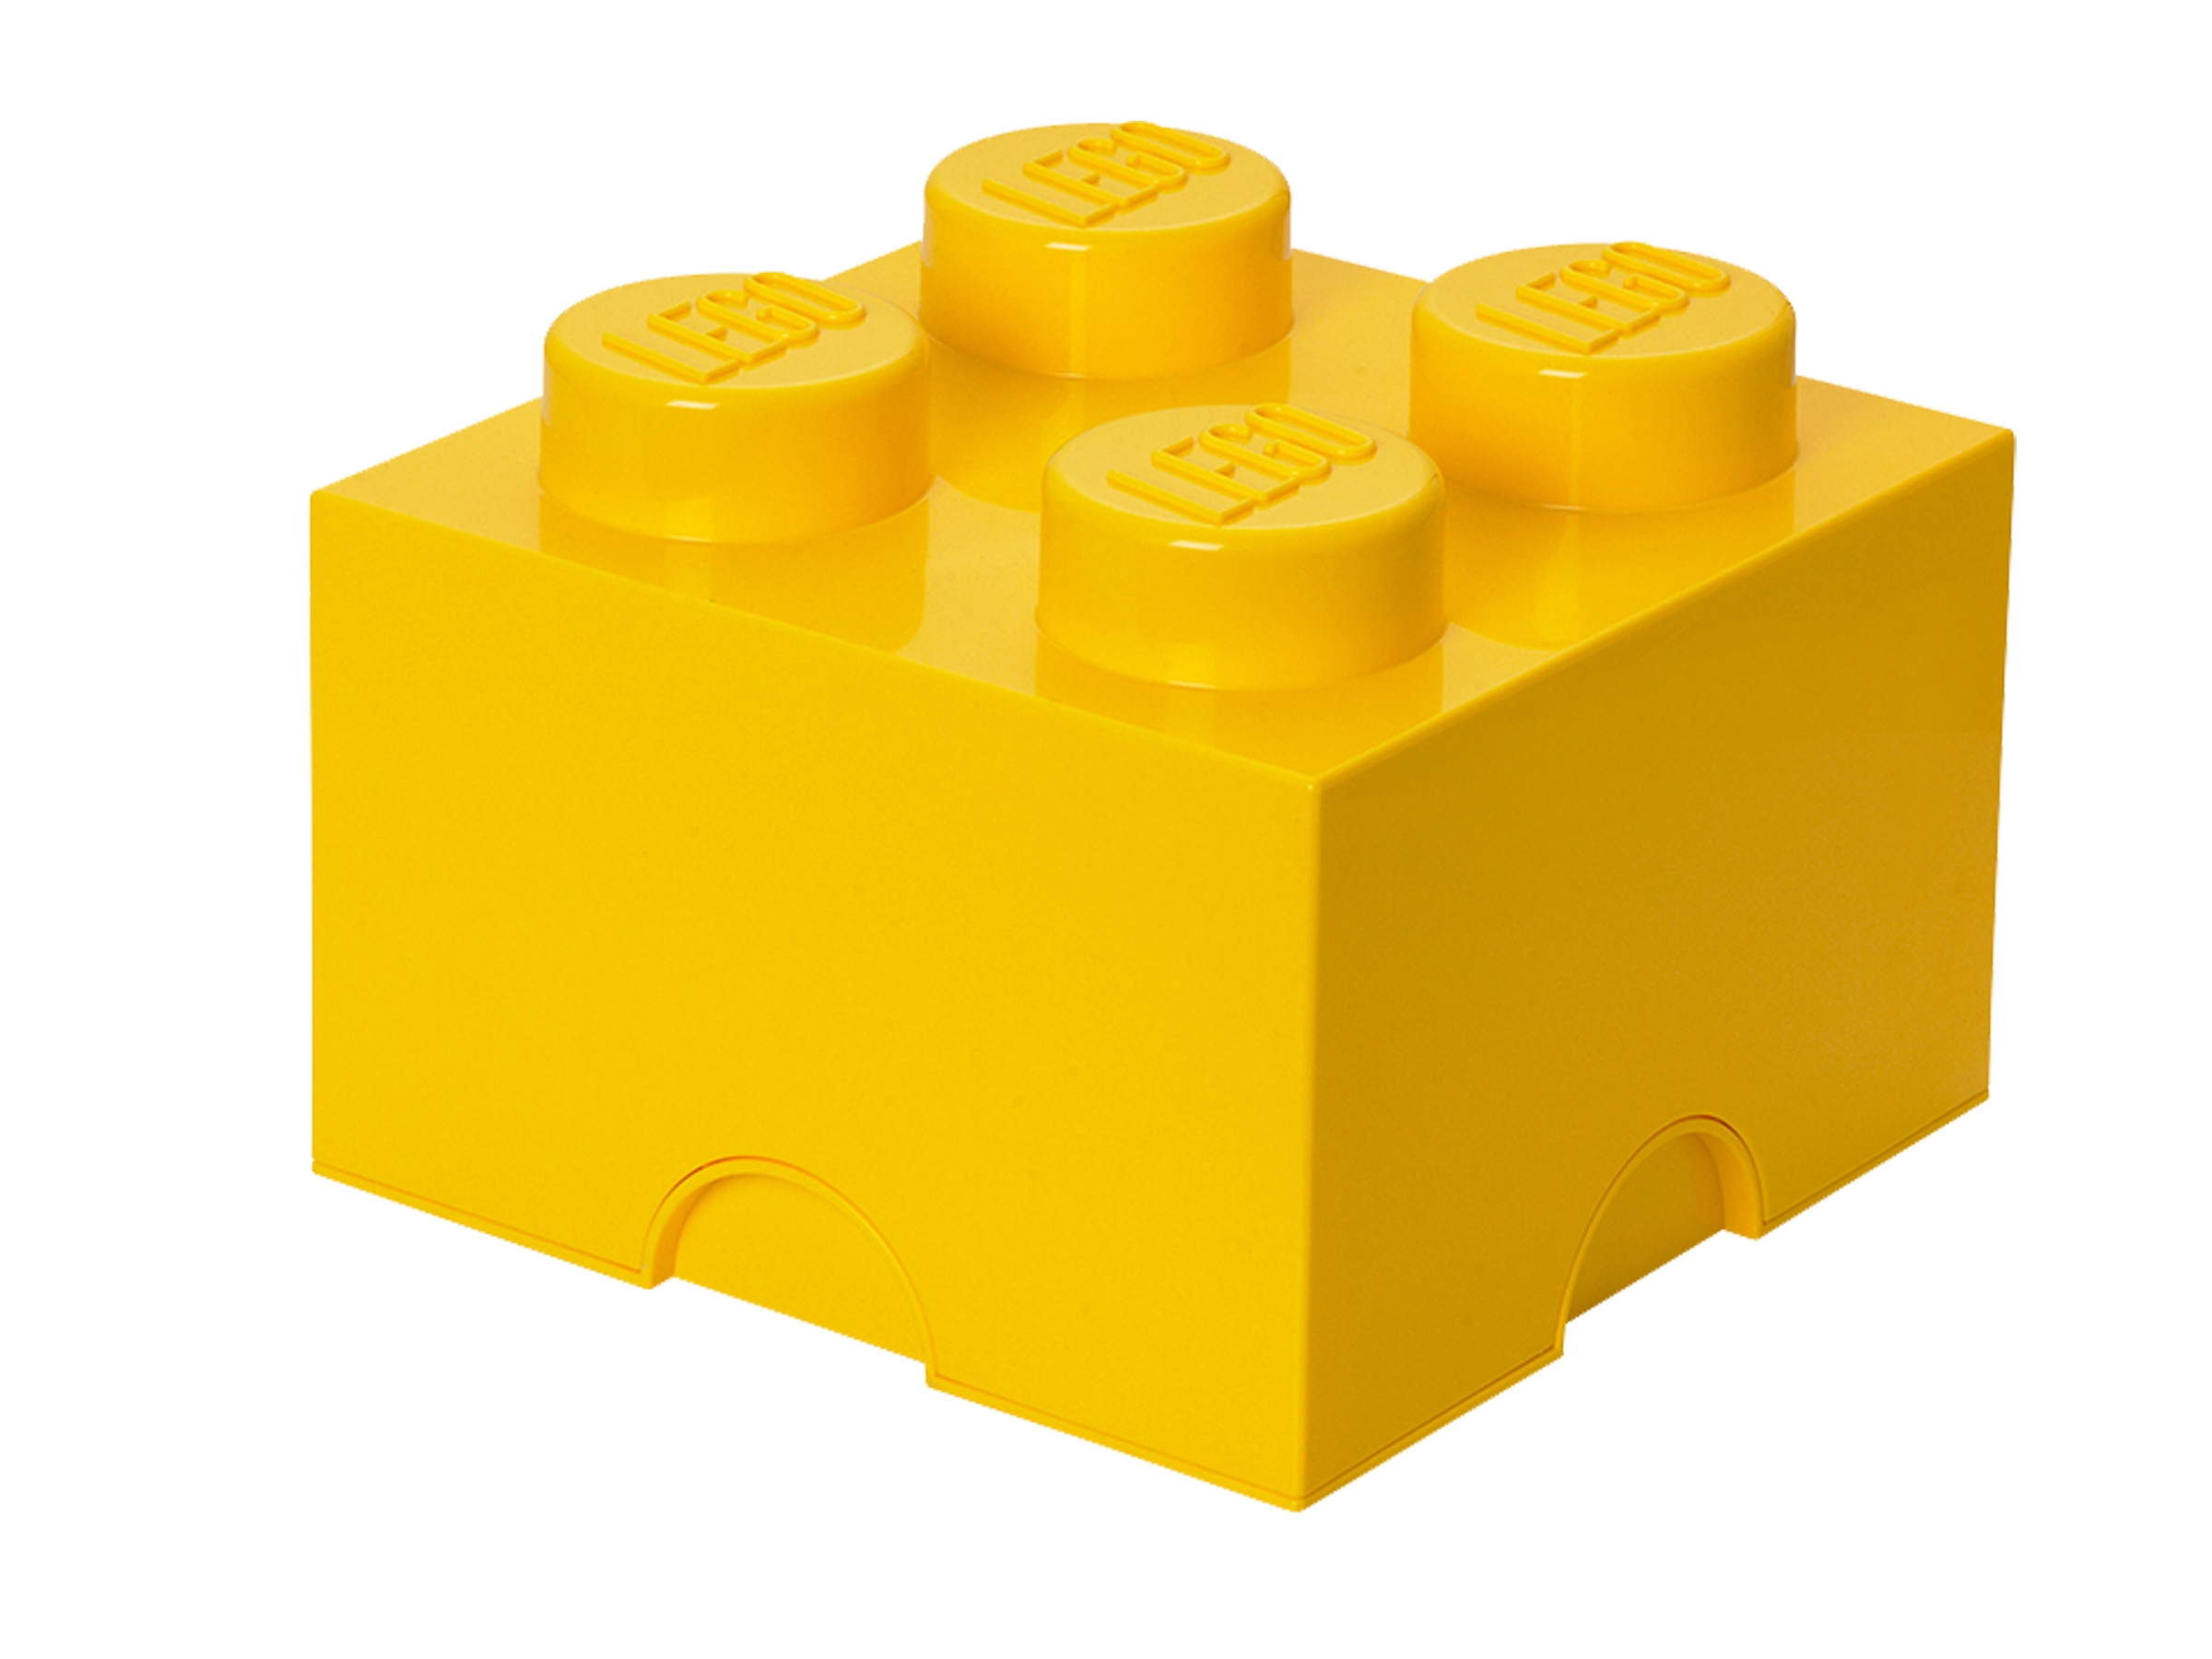 Lego Block Images - KibrisPDR